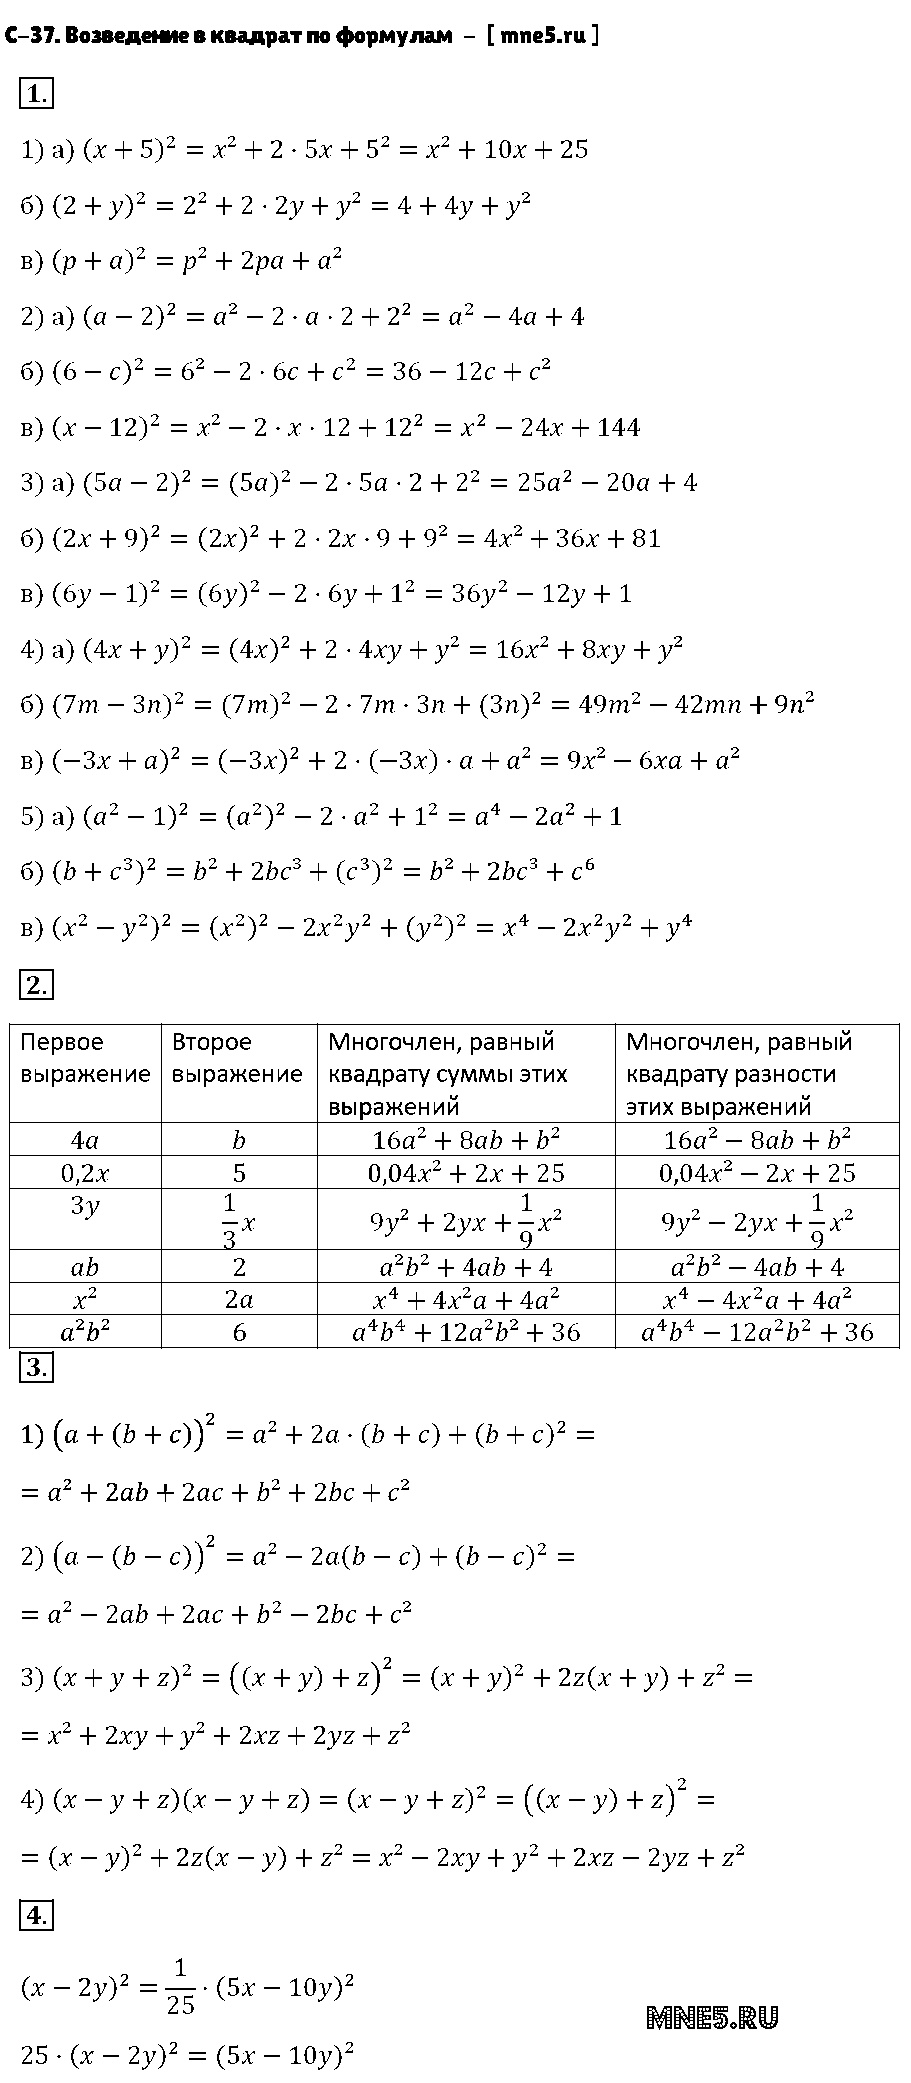 ГДЗ Алгебра 7 класс - С-37. Возведение в квадрат по формулам